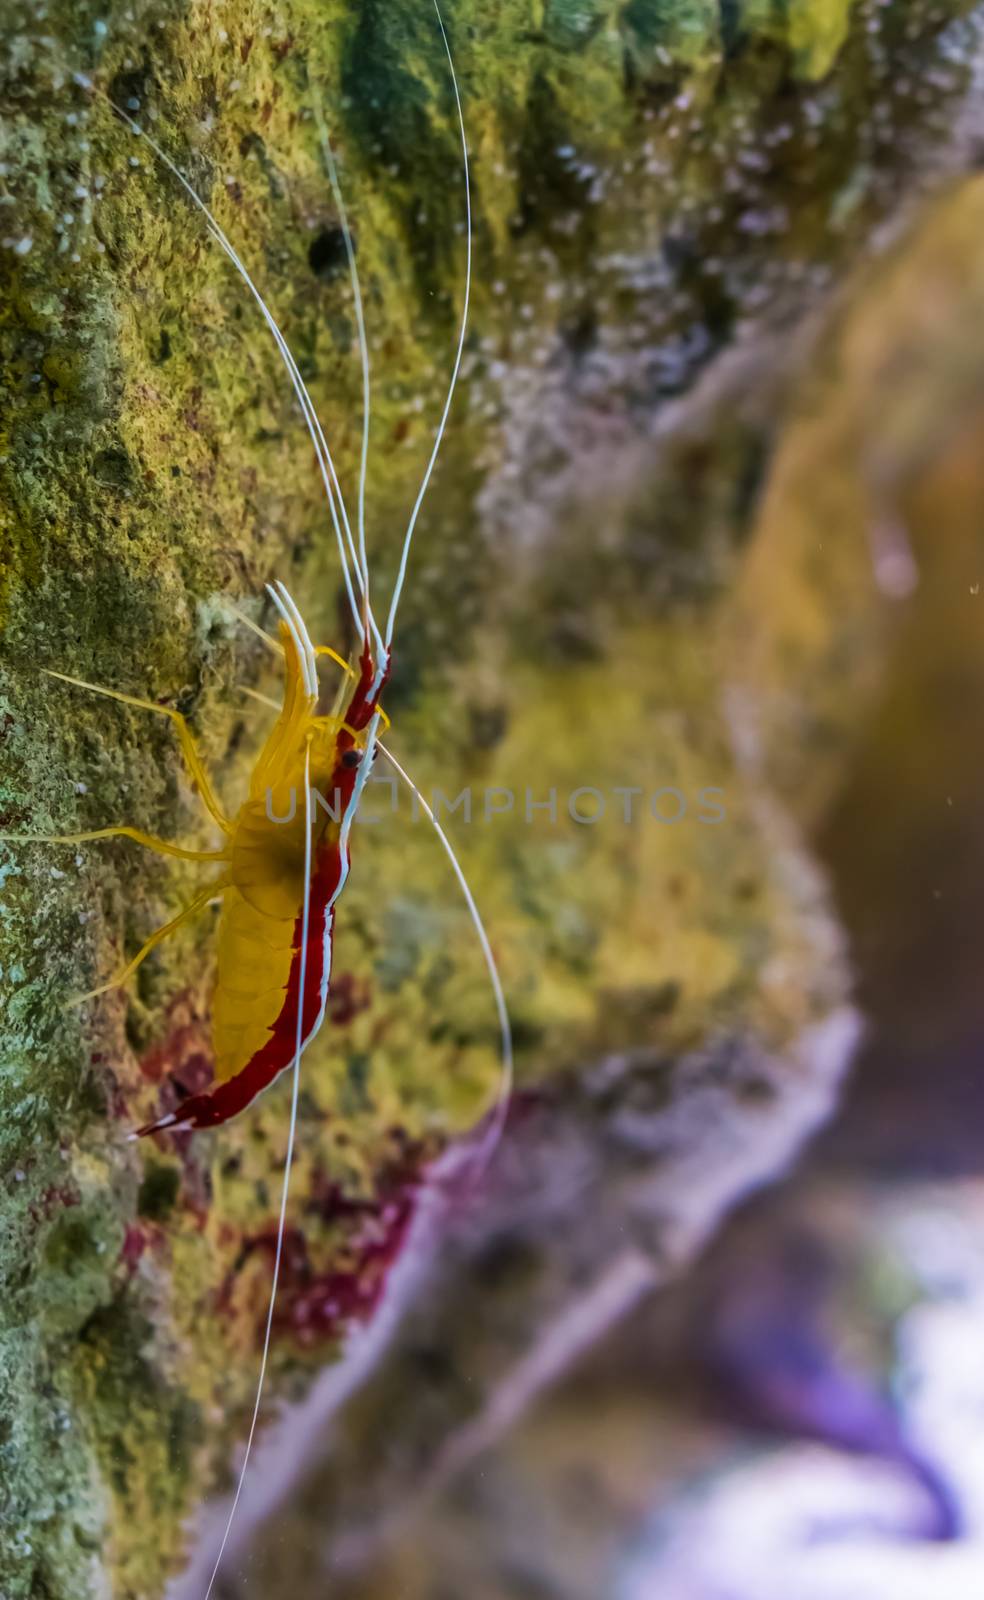 atlantic cleaner shrimp in closeup, colorful prawn from the atlantic ocean by charlottebleijenberg